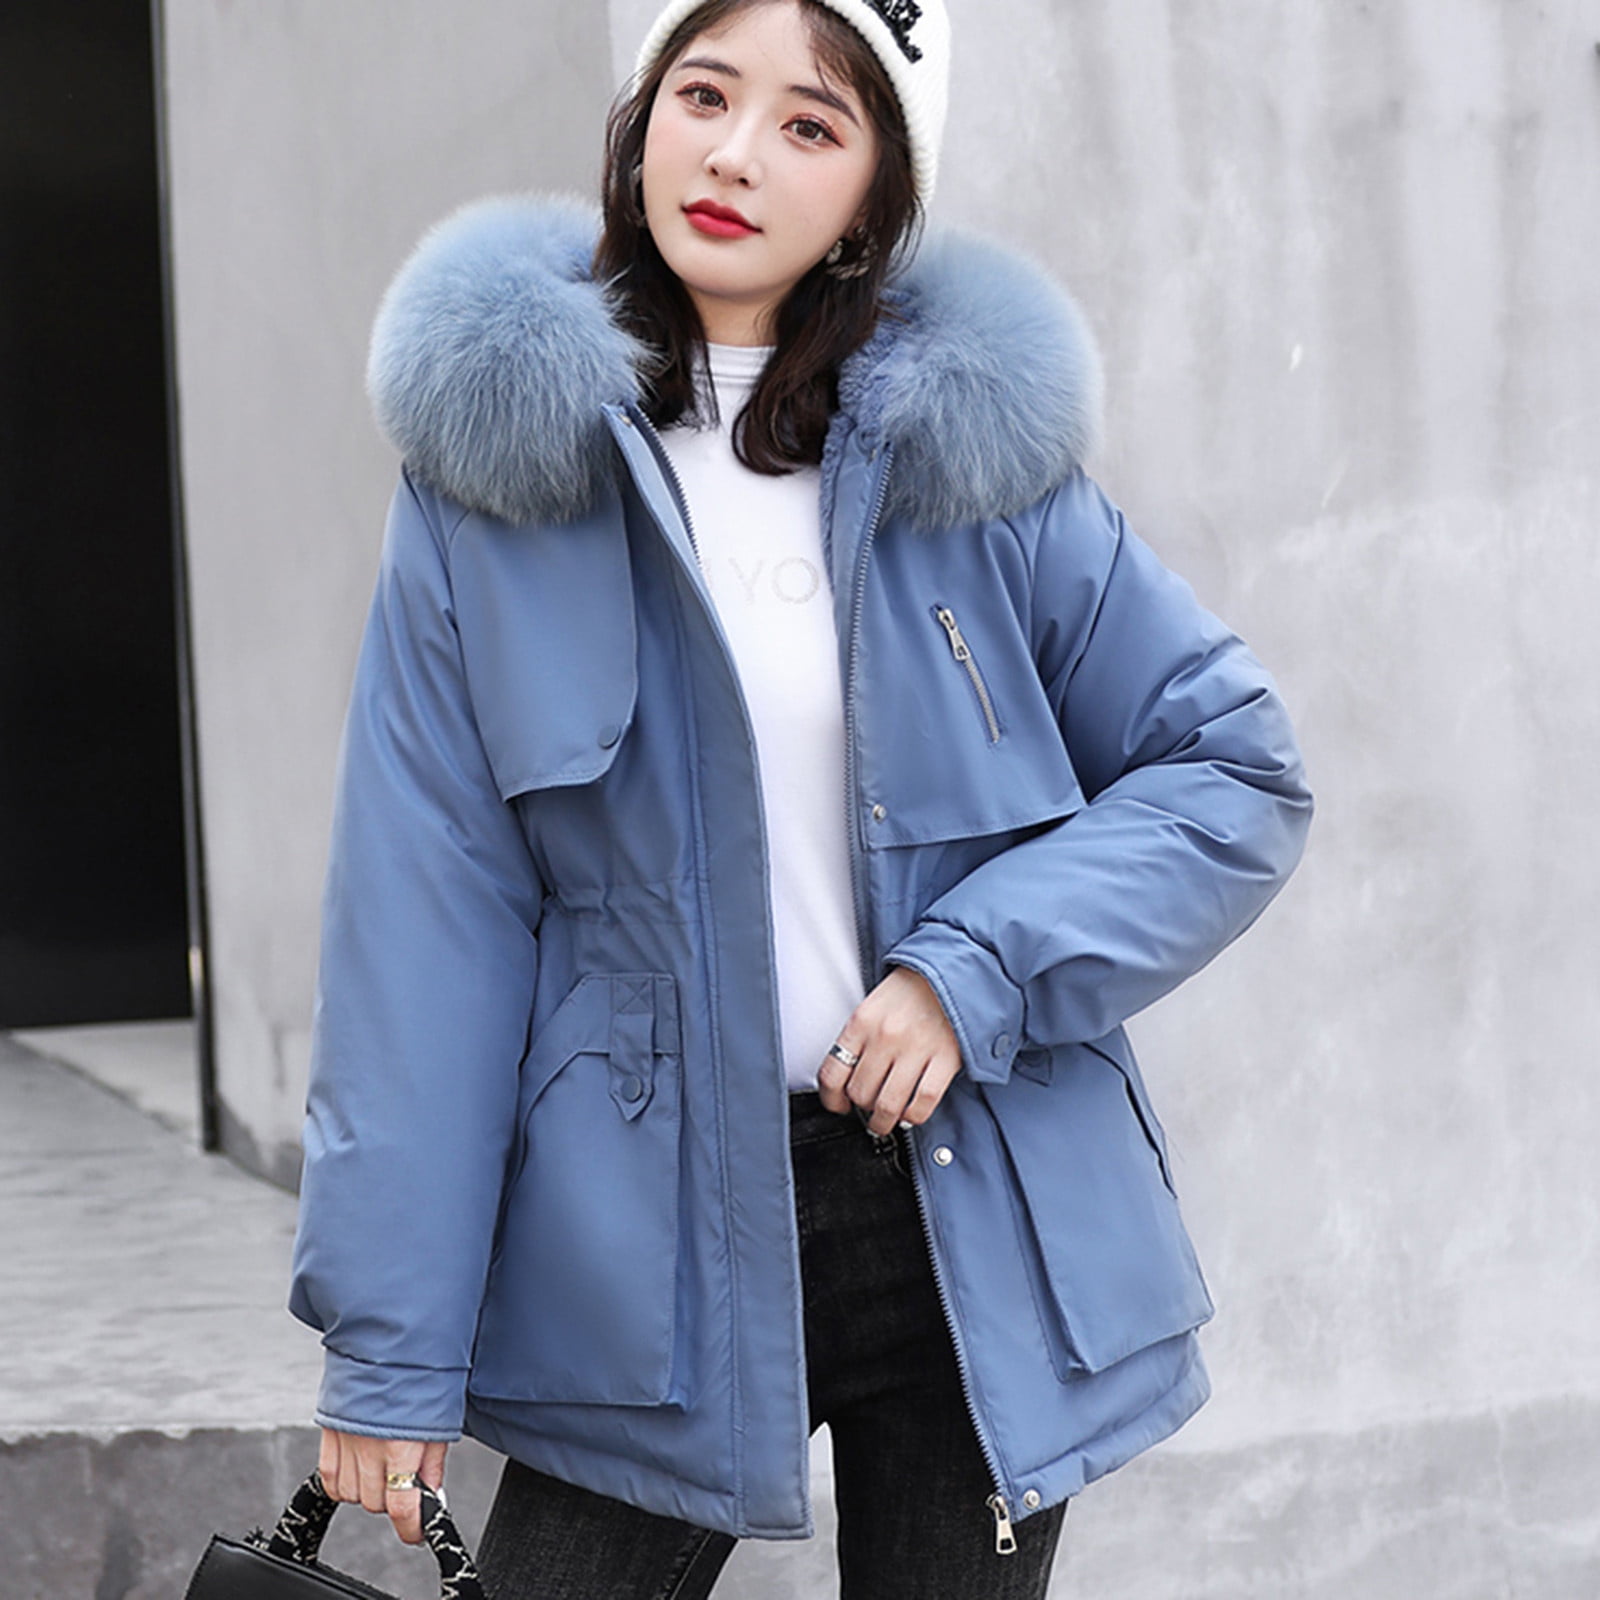 Babysbule Winter Jackets for Women Clearance Womens Winter Jacket Warm  Overcoat Slim Fur-Collar Zipper Thicker Coat Outwear 